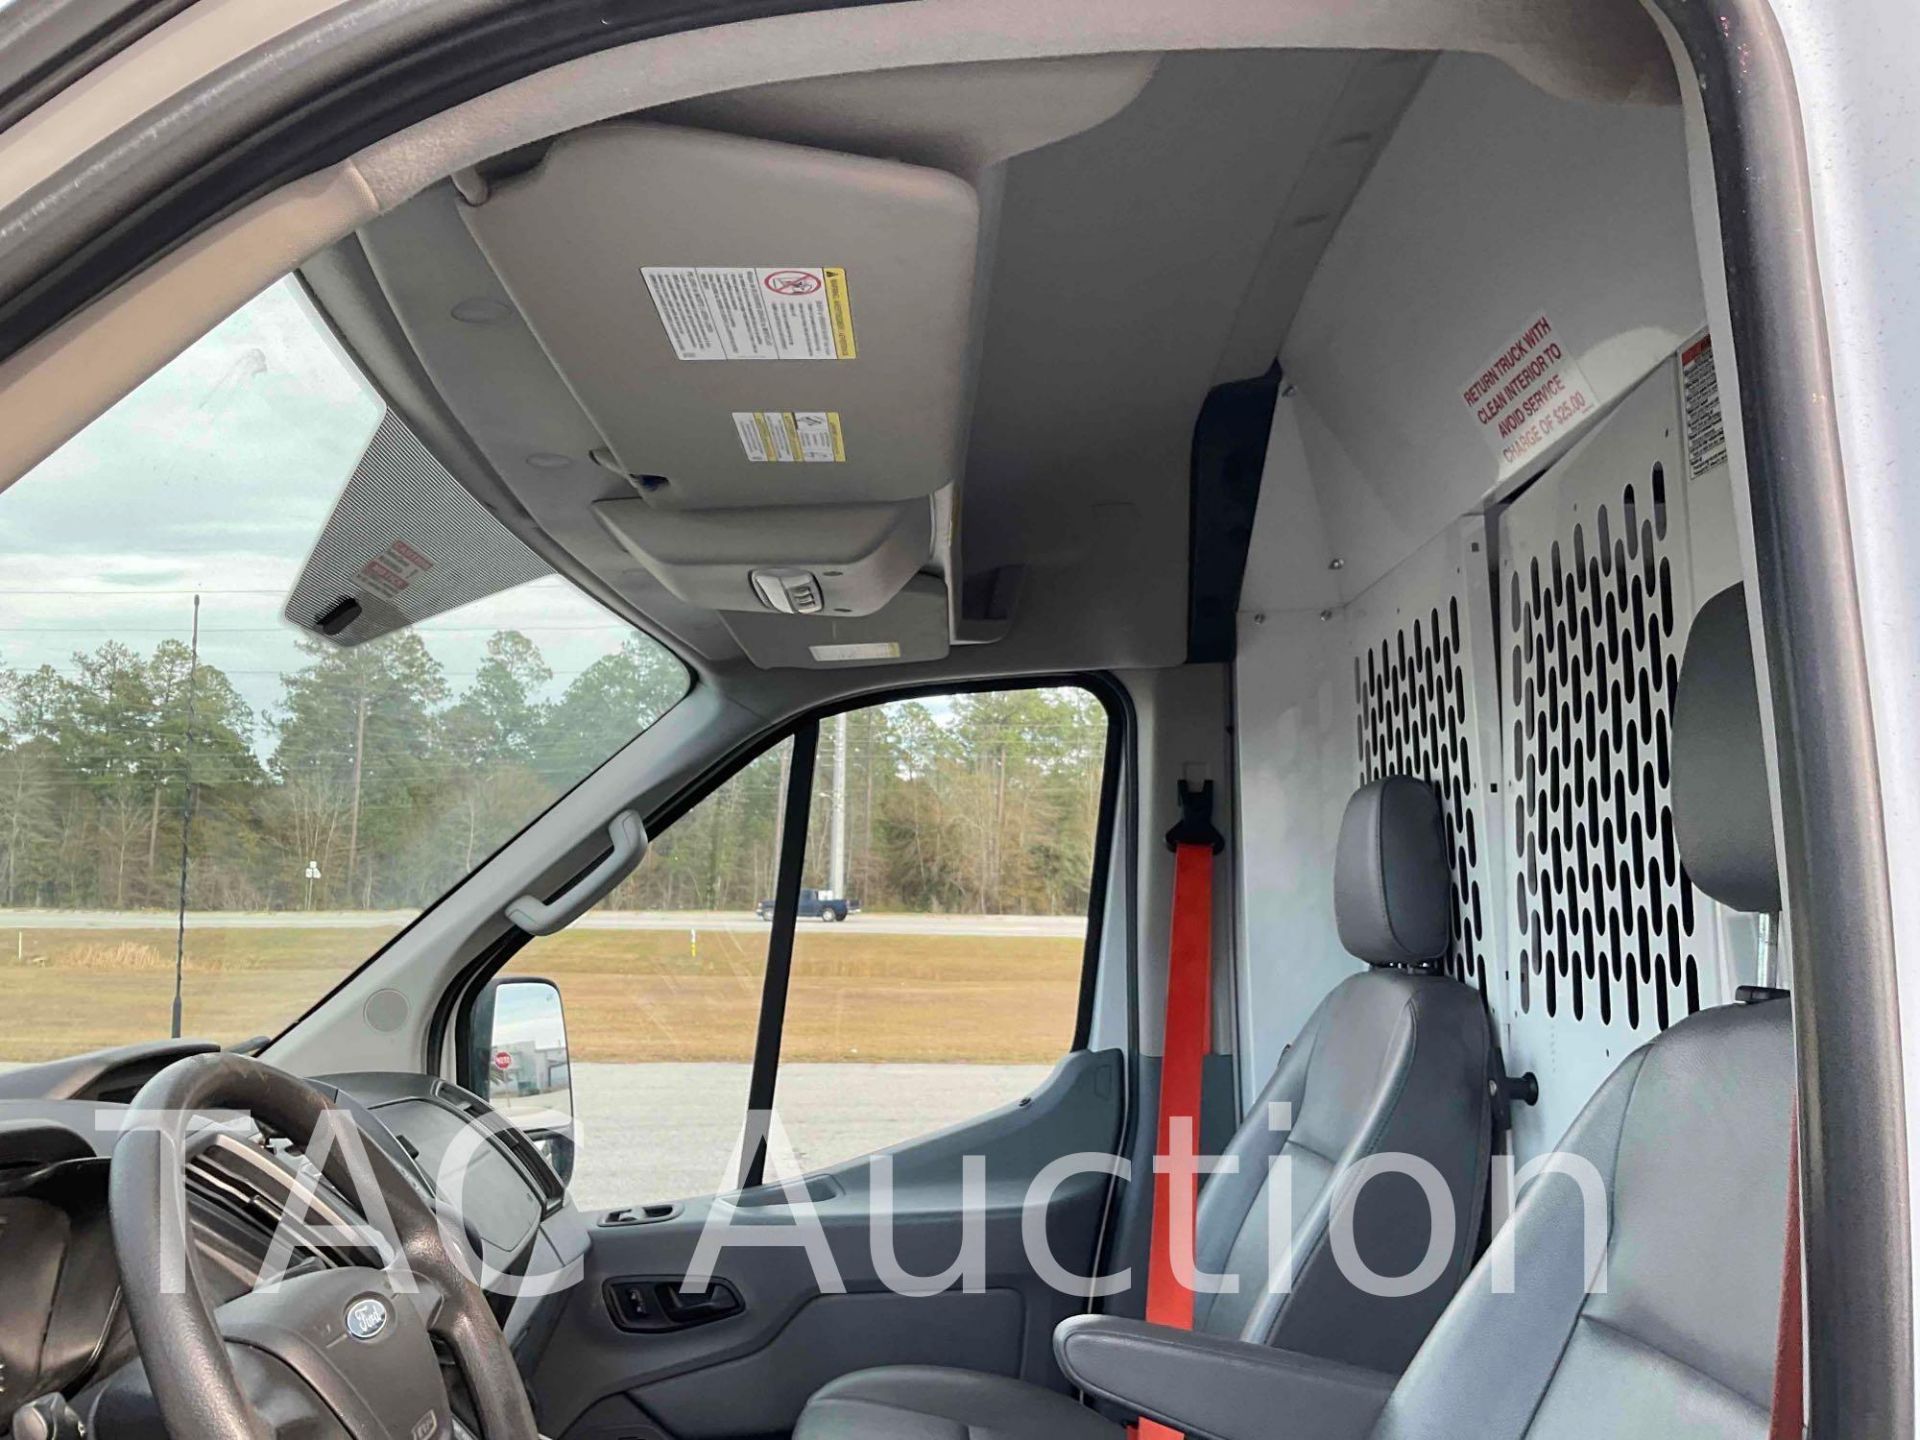 2019 Ford Transit 150 Cargo Van - Image 13 of 49